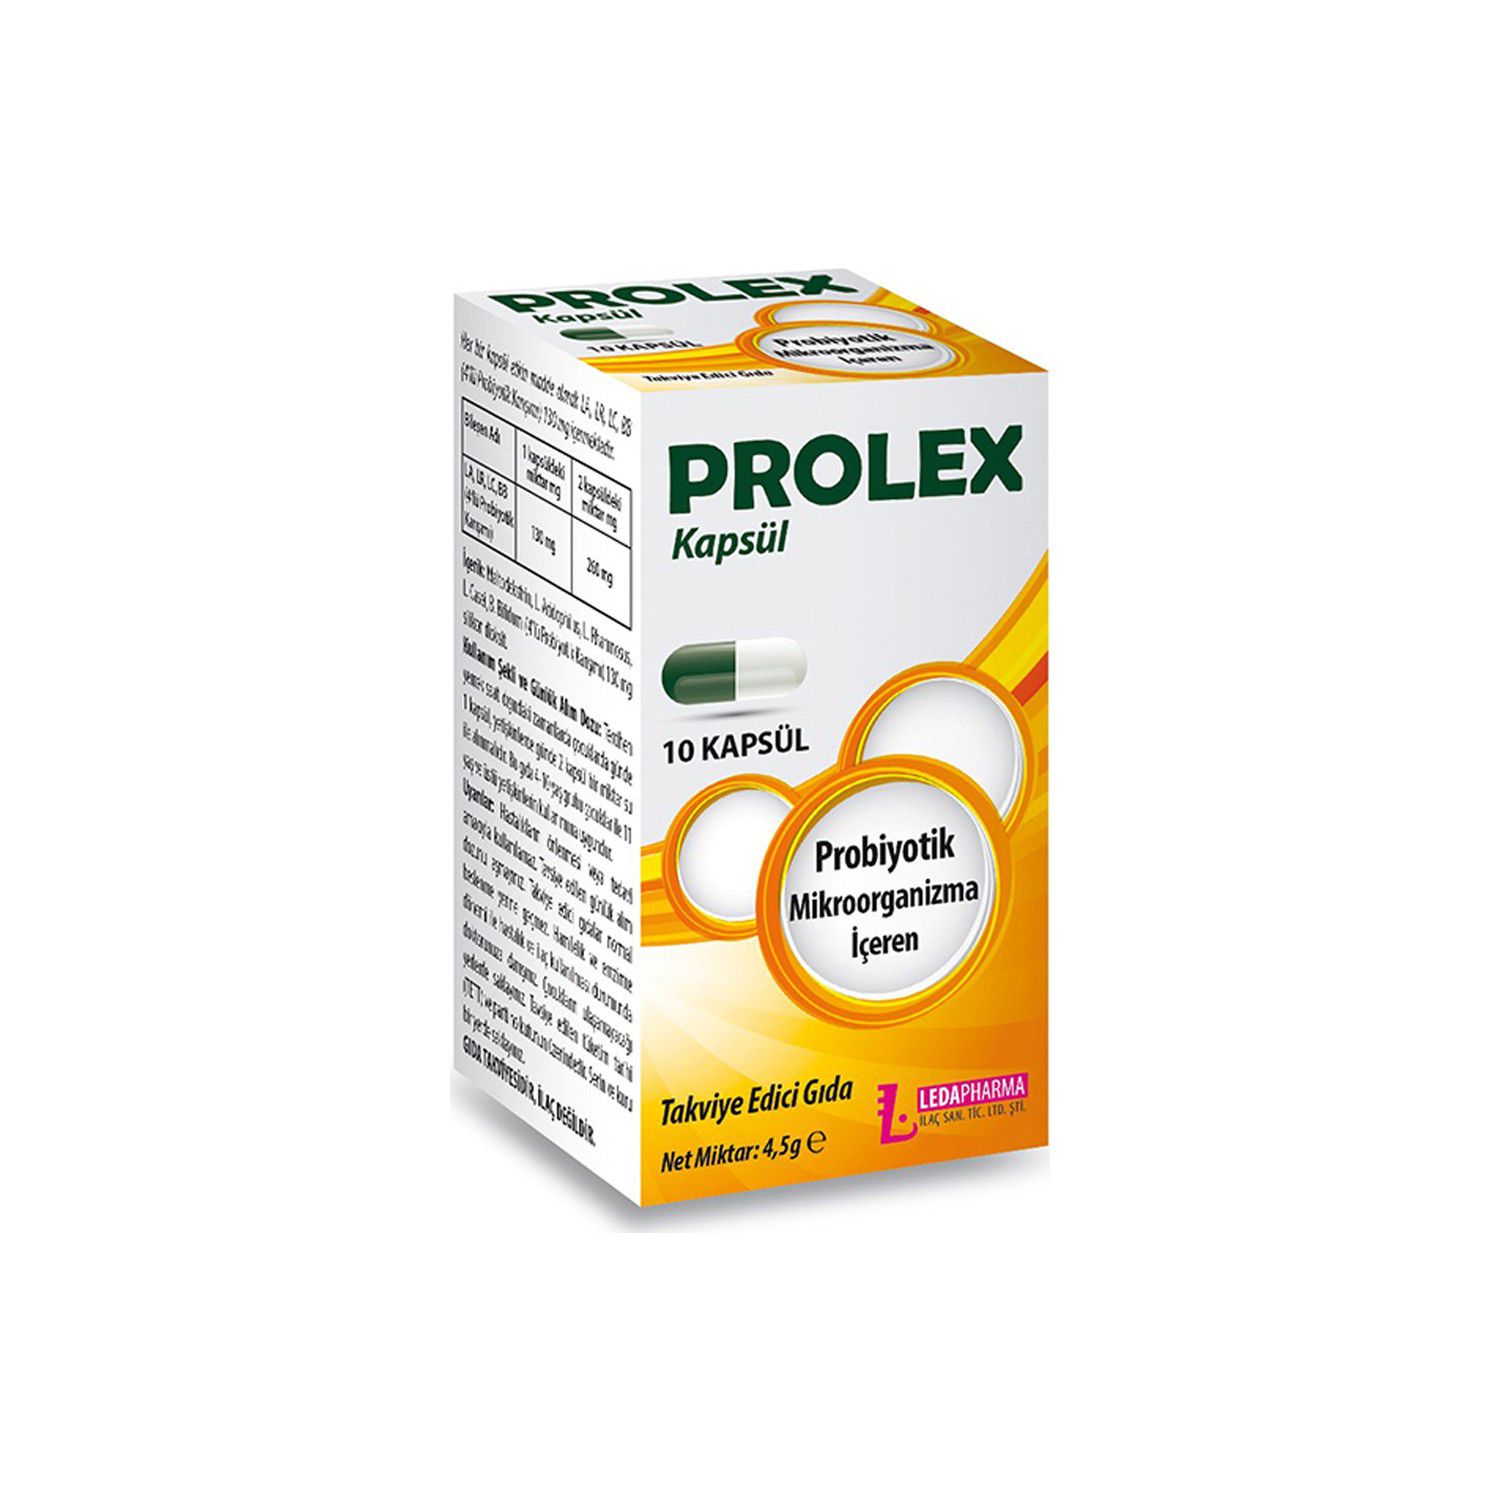 Prolex 10 Kapsül PROBİYOTİK